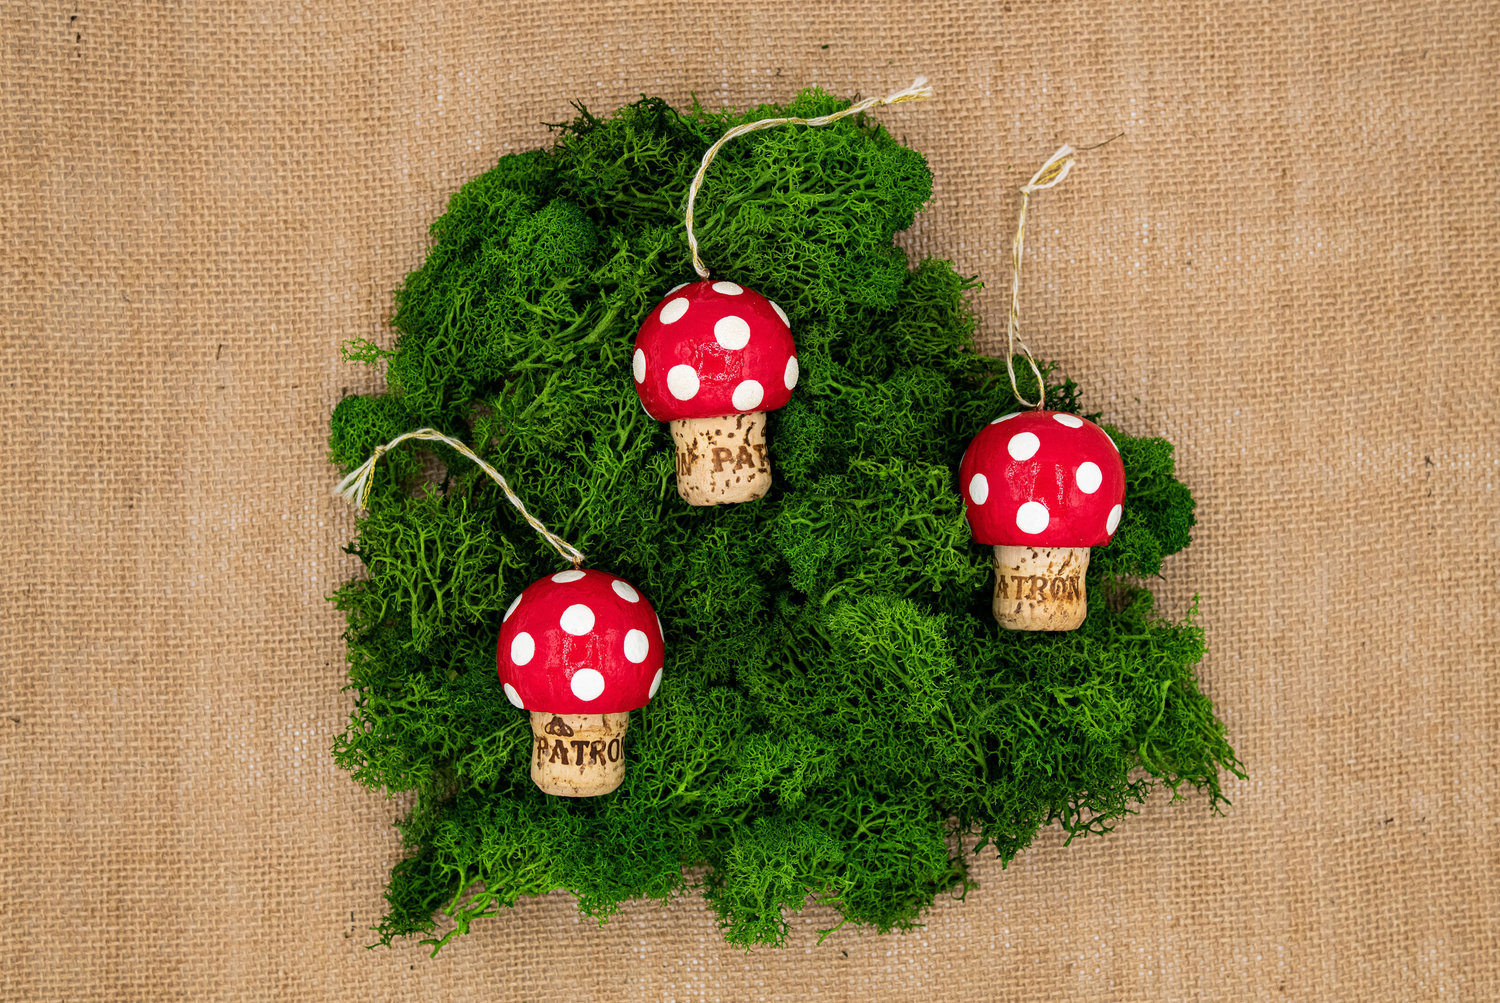 A trio of lucky mushroom ornaments or “gluckspilz”